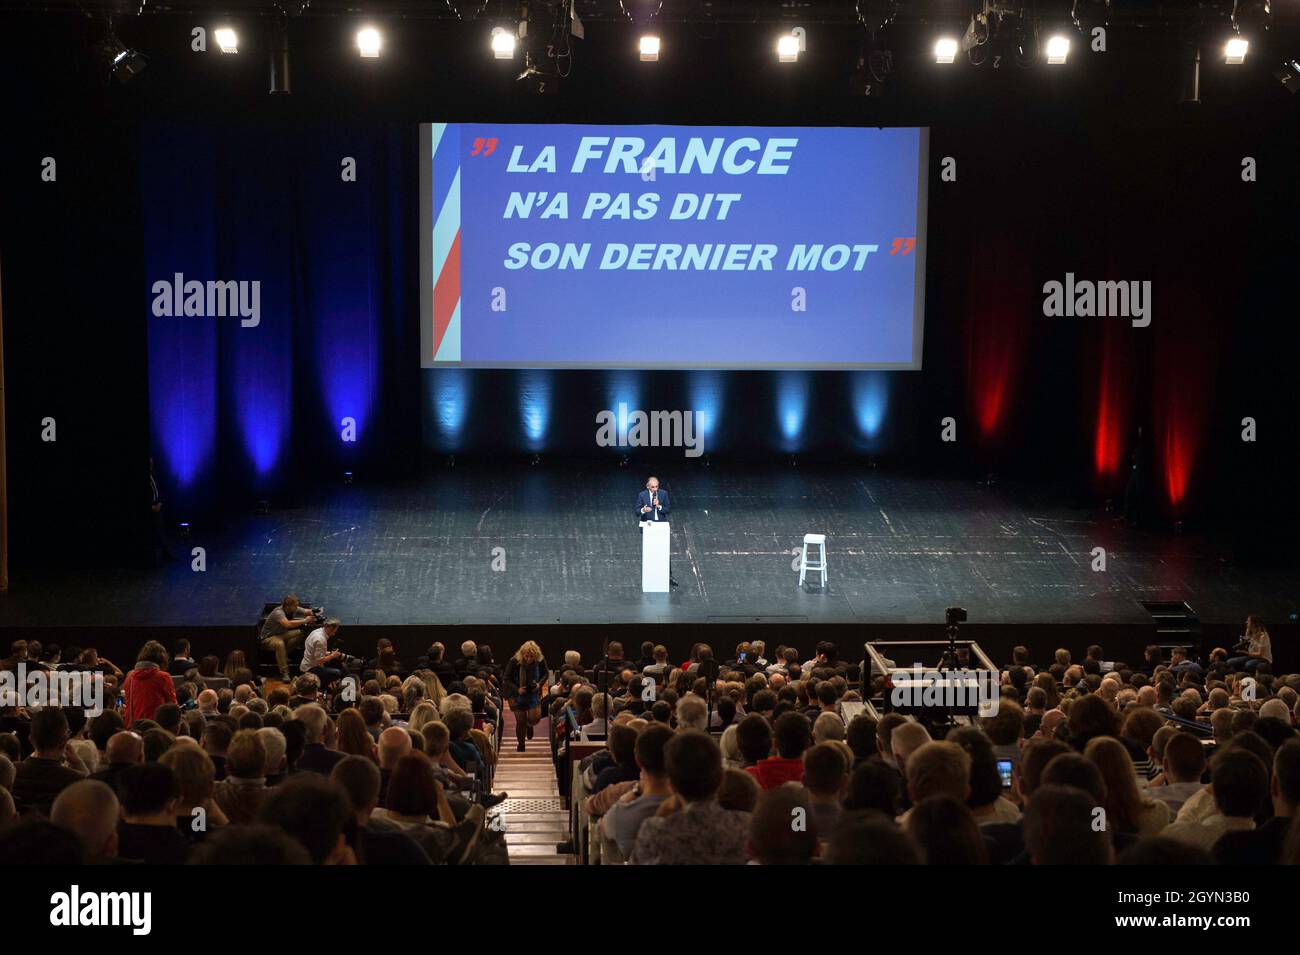 Eric Zemmour ist während der Kampagne auf der Bühne zu sehen. Eric Zemmour verhielt sich wie ein Kandidat in einem Wahlkampf, auch wenn er noch nicht offiziell seinen Eintritt in das Rennen um die französischen Präsidentschaftswahlen 2022 erklärt hat. Um ihn herum erscheinen nun neue Mitarbeiter, die auf Wahlkampagnen spezialisiert sind, und ein Merchandising mit der Aufschrift „Zemmour2022“. Seit der jüngsten Umfrage, die ihn für die zweite Runde gegen Emmanuel Macron auf eine Stufe mit Marine Le Pen stellte, lassen seine Haltung und Organisation kaum Raum für Zweifel an seinen Absichten. Stockfoto